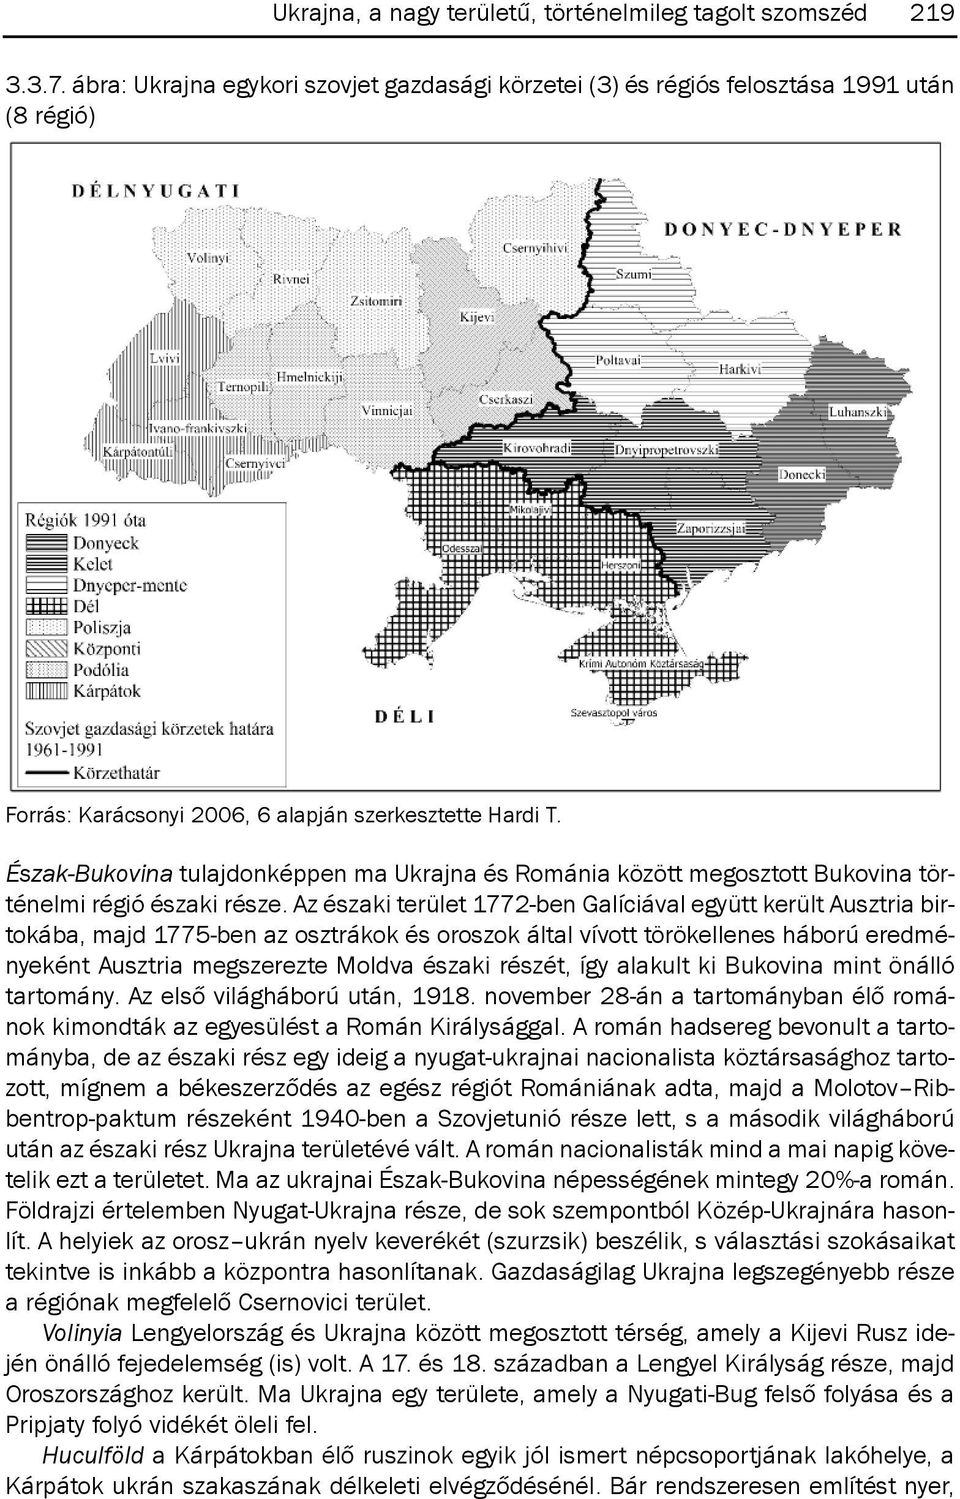 Észak-Bukovina tulajdonképpen ma Ukrajna és románia között megosztott Bukovina történelmi régió északi része.